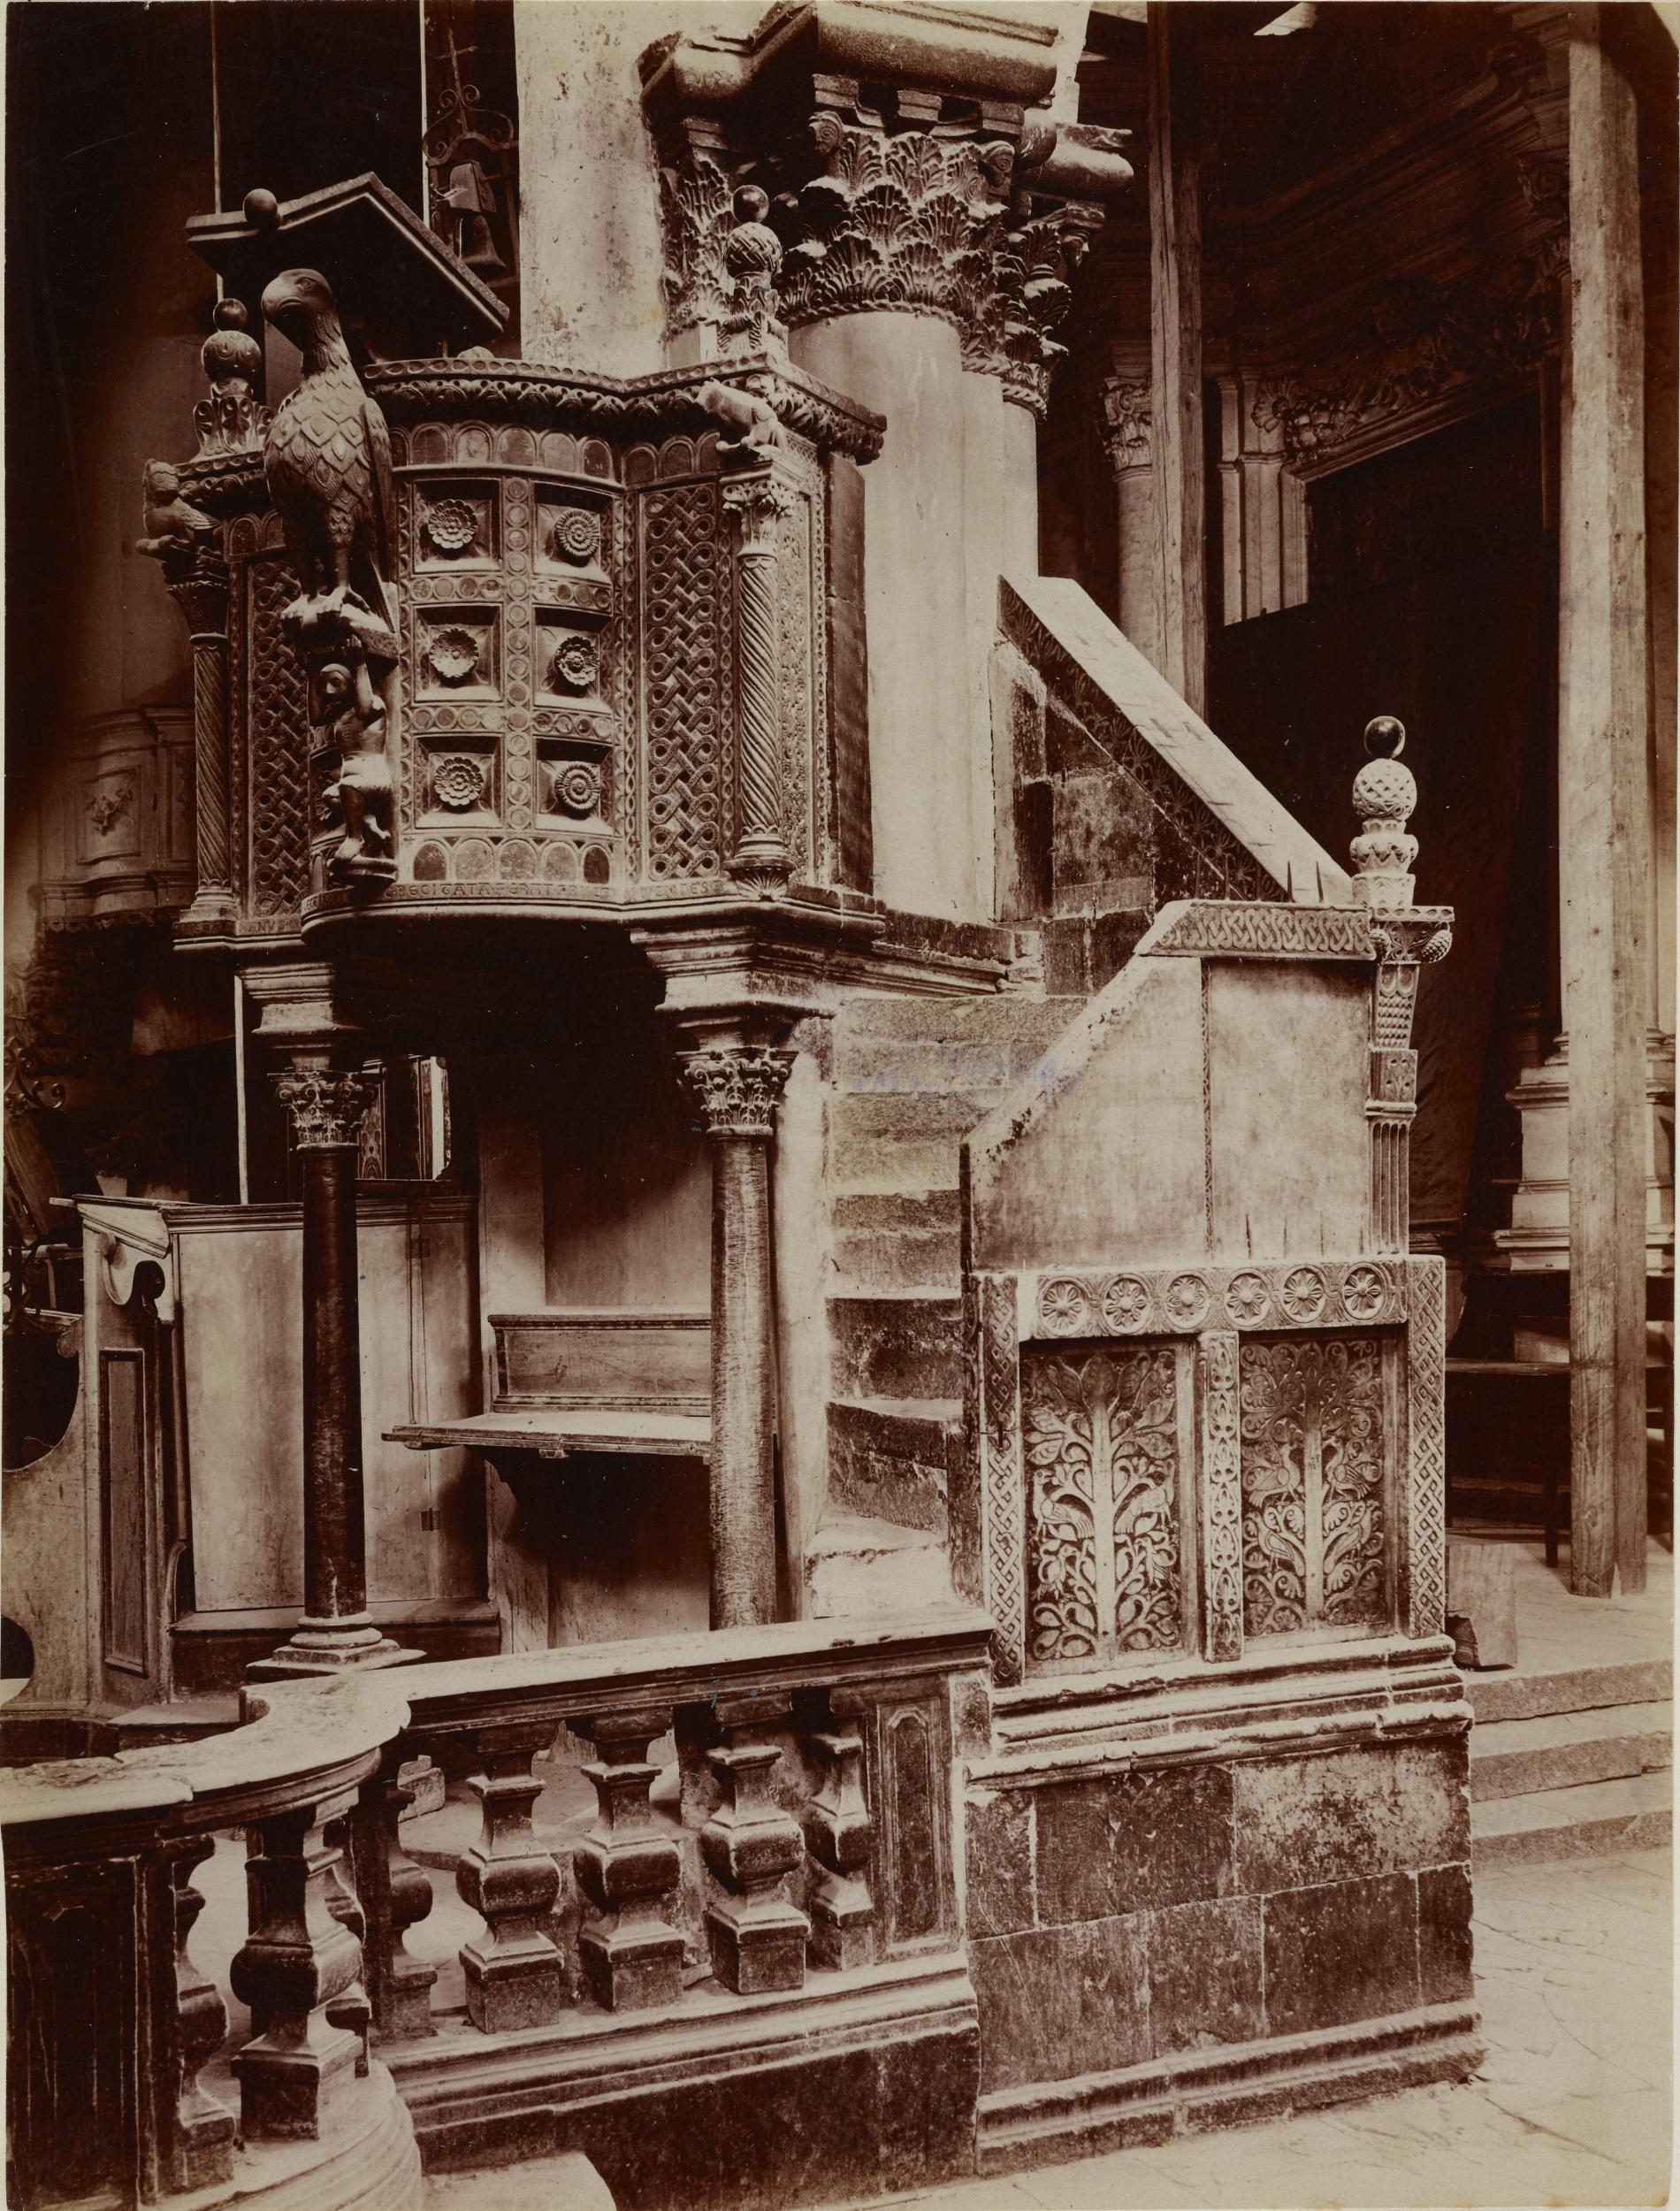 Fotografo non identificato, Bitonto - Cattedrale di S. Valentino, ambone veduto dalla scala d'accesso, 1876-1900, albumina/carta, MPI137867